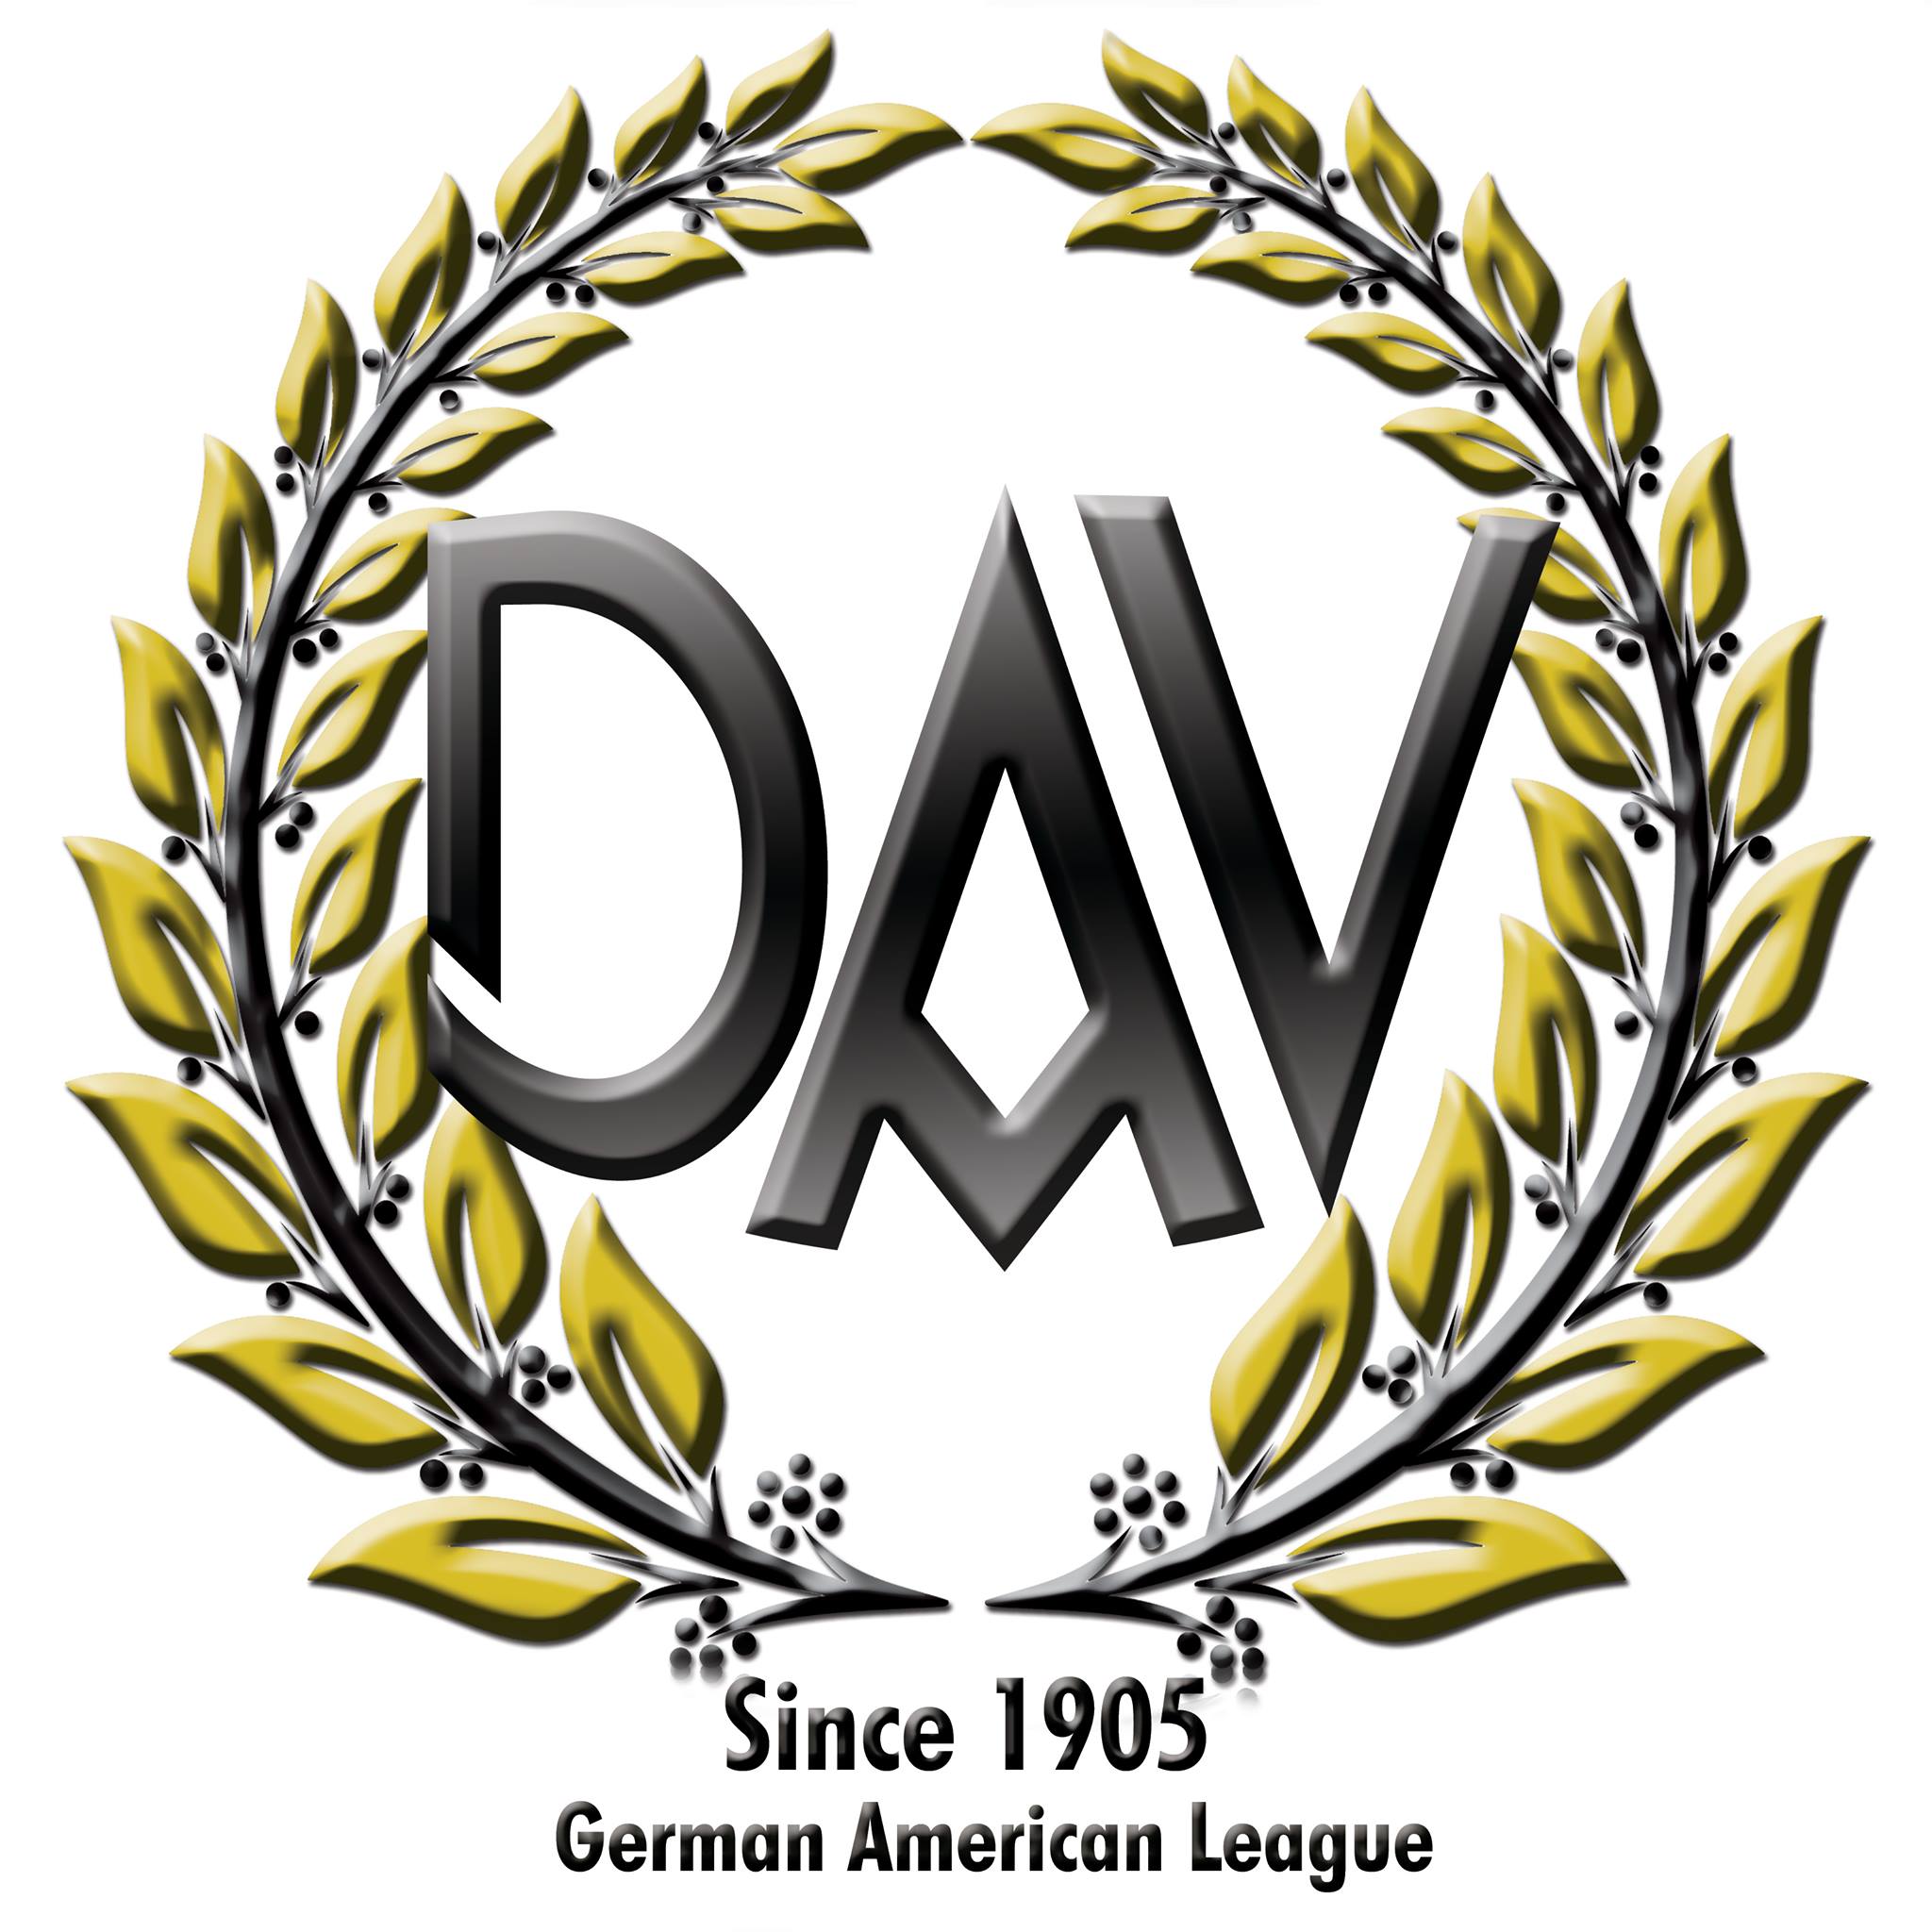 German Speaking Organizations in San Diego California - German-American League of Los Angeles, Inc., Ltd.